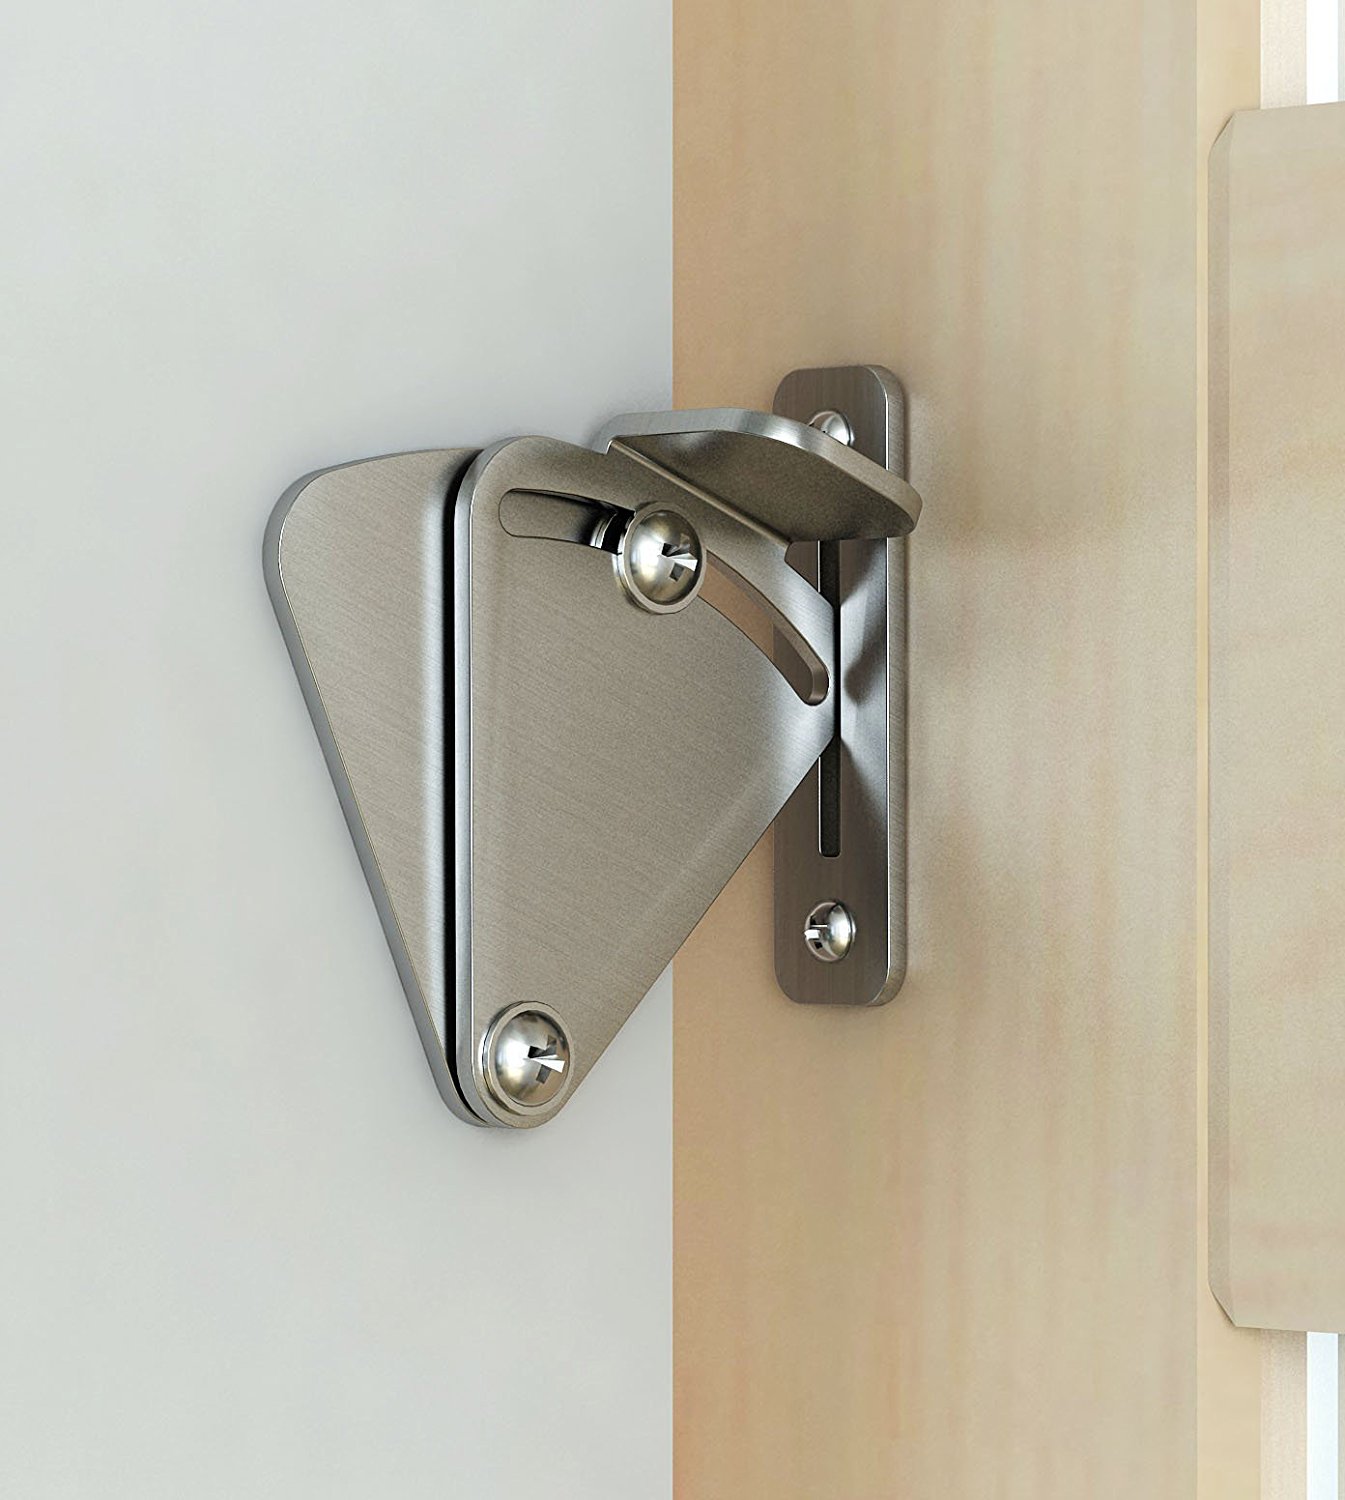 DIYHD stainless steel lock for sliding barn door wood door latch ...